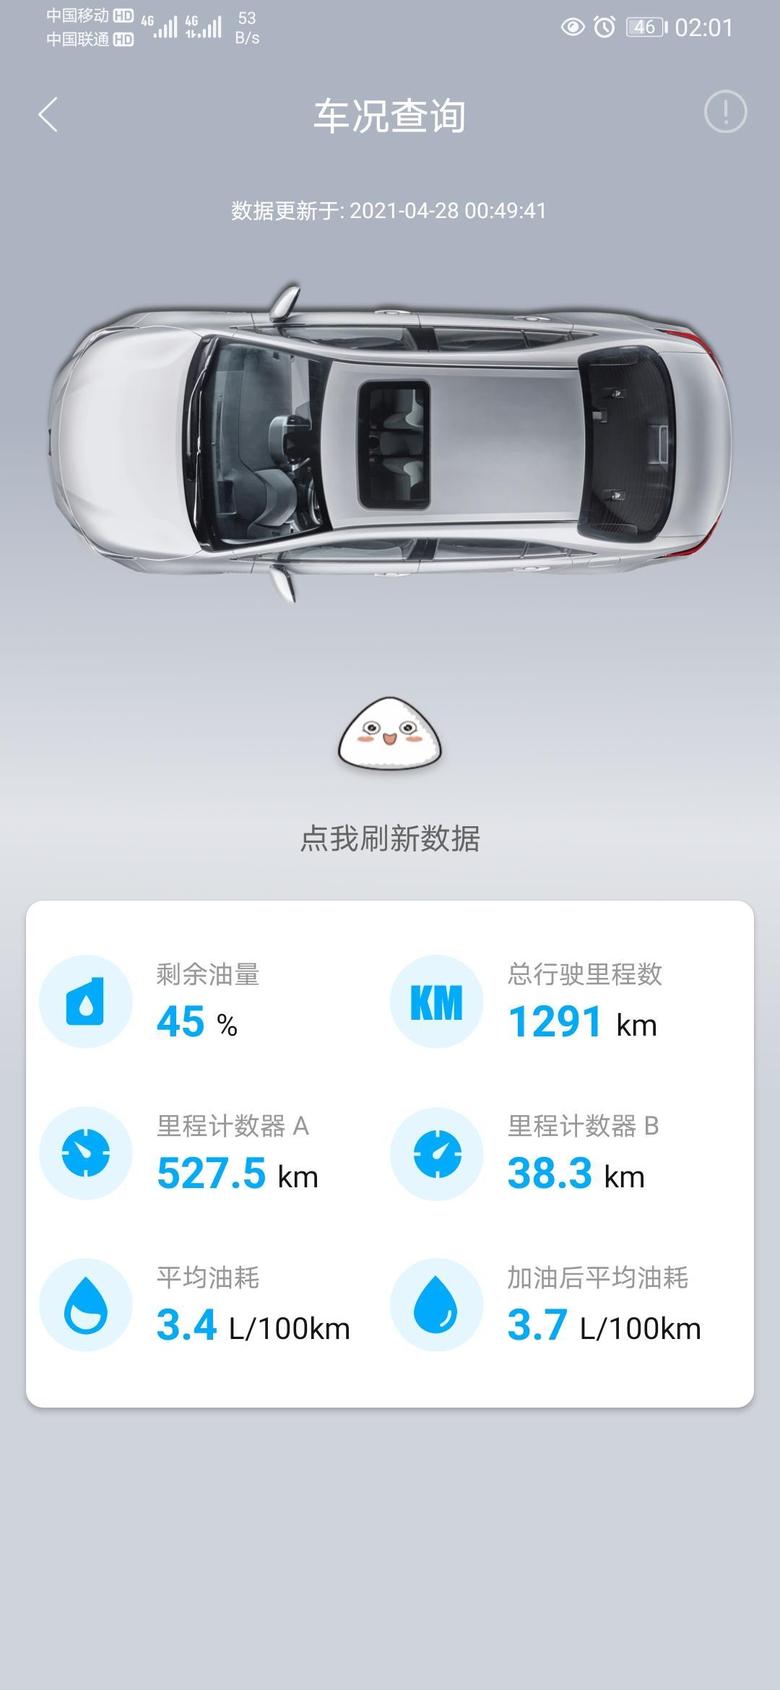 雷凌 广州提的车刚好一个月14.1落地双擎运动越开越香还可以上广州牌摇号几率60左右五一准备开回老家一趟还没开过长途